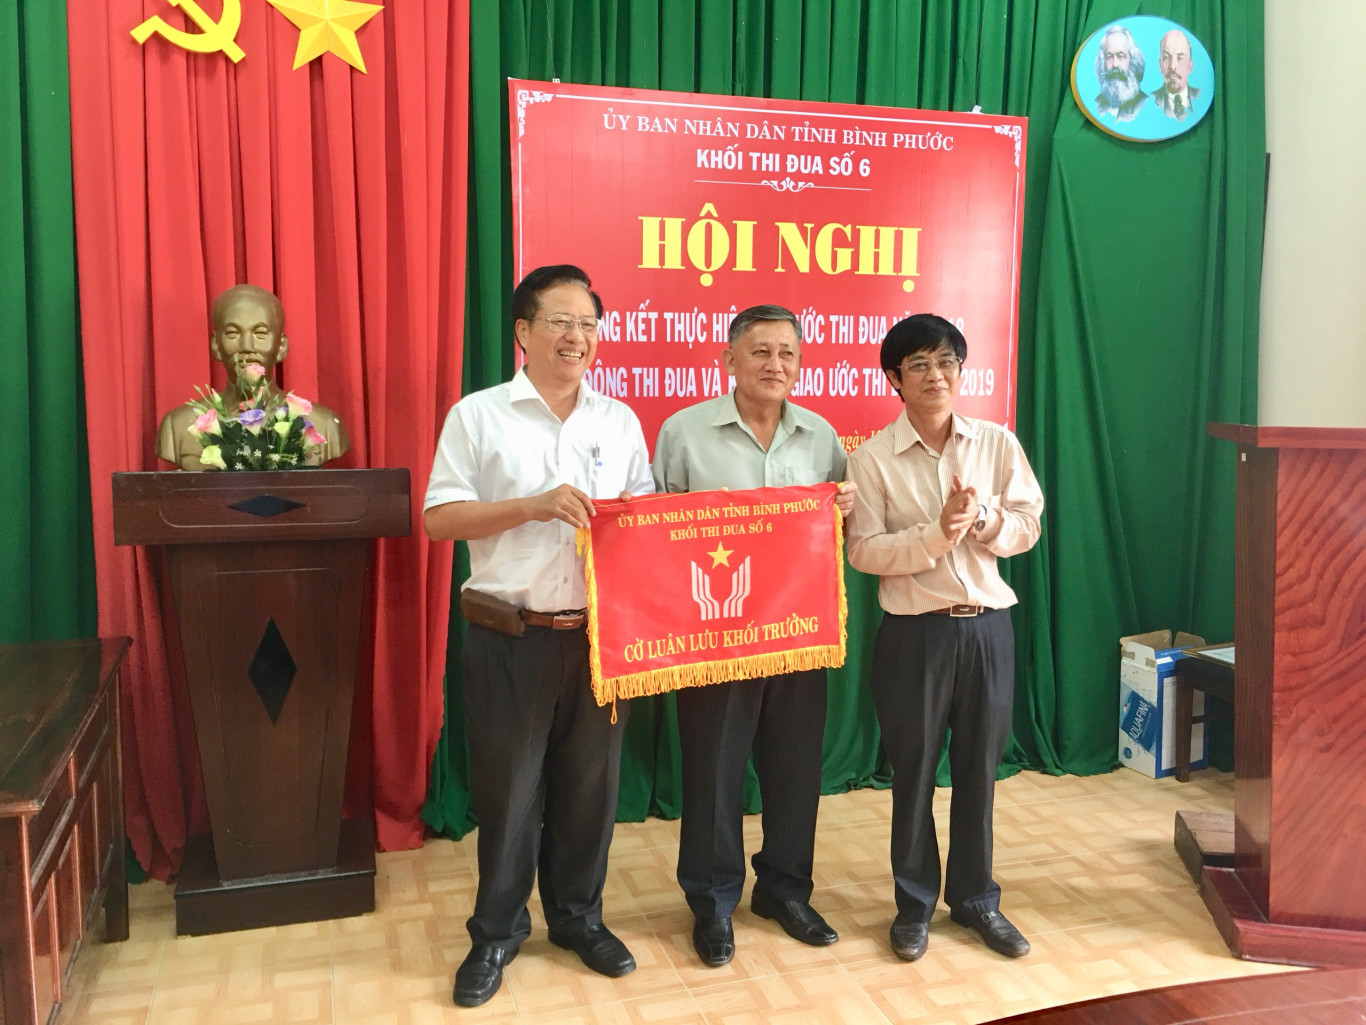 Trường Cao đẳng nghề Bình Phước trao cờ luân lưu Khối trưởng khối thi đua số 6 cho Sở Lao động Thương binh và Xã hội